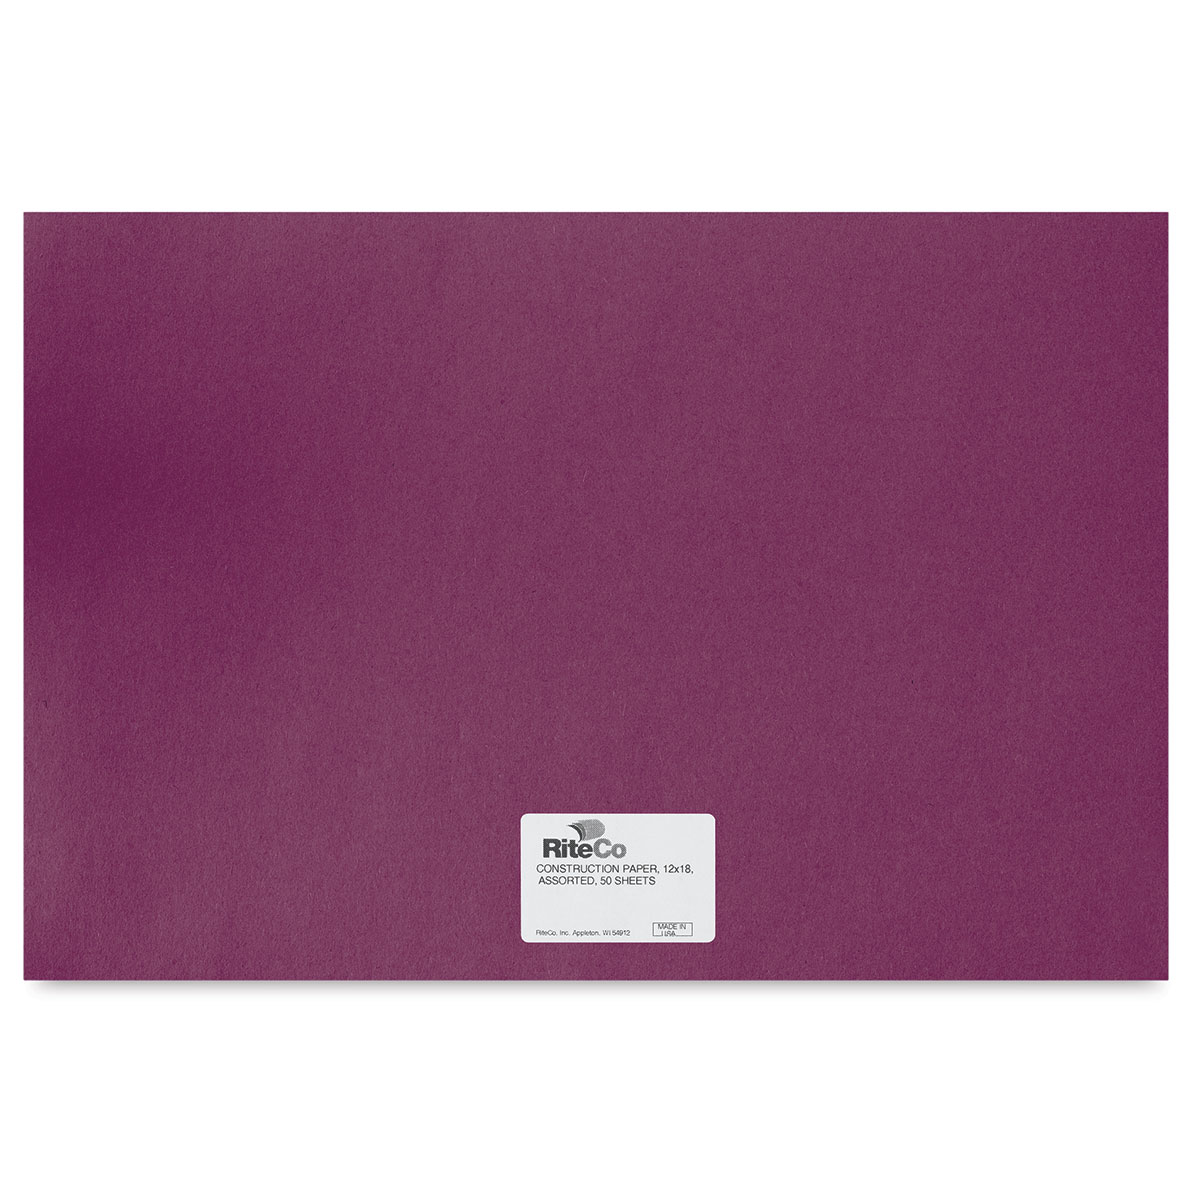 Riverside 12x18 Lilac 50 SHT Construction Paper for sale online